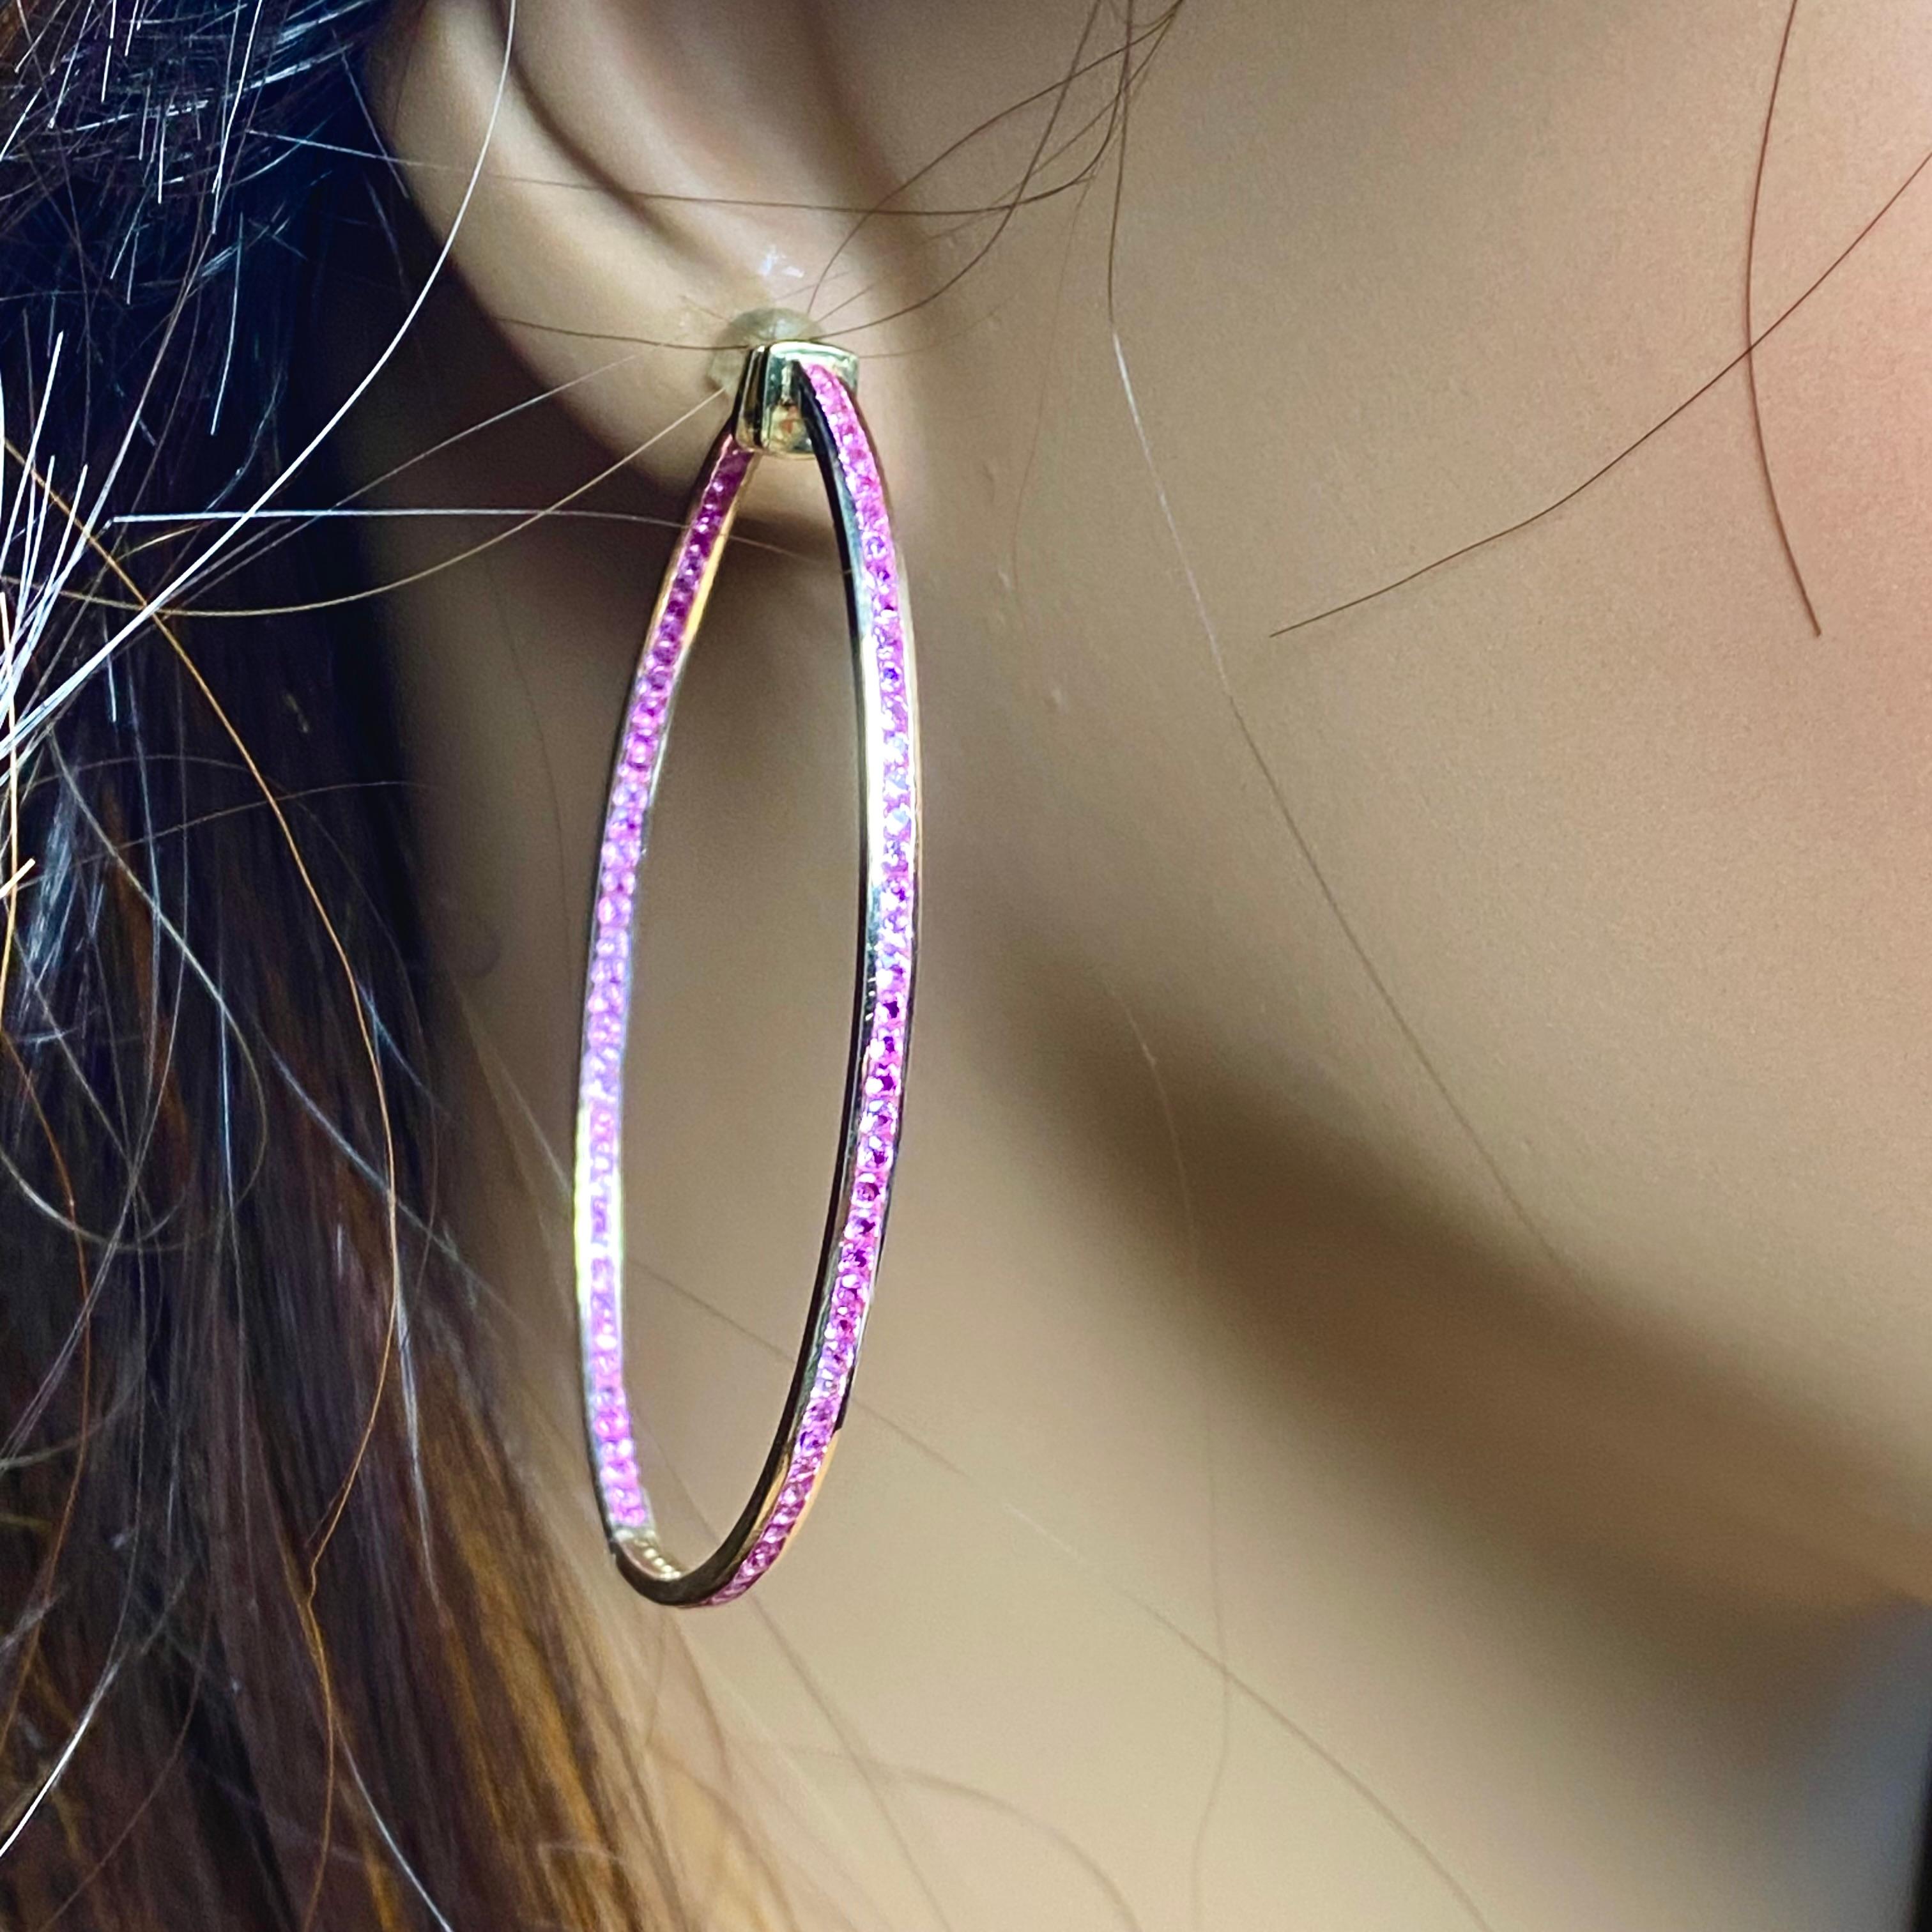 2.5 inch hoop earrings